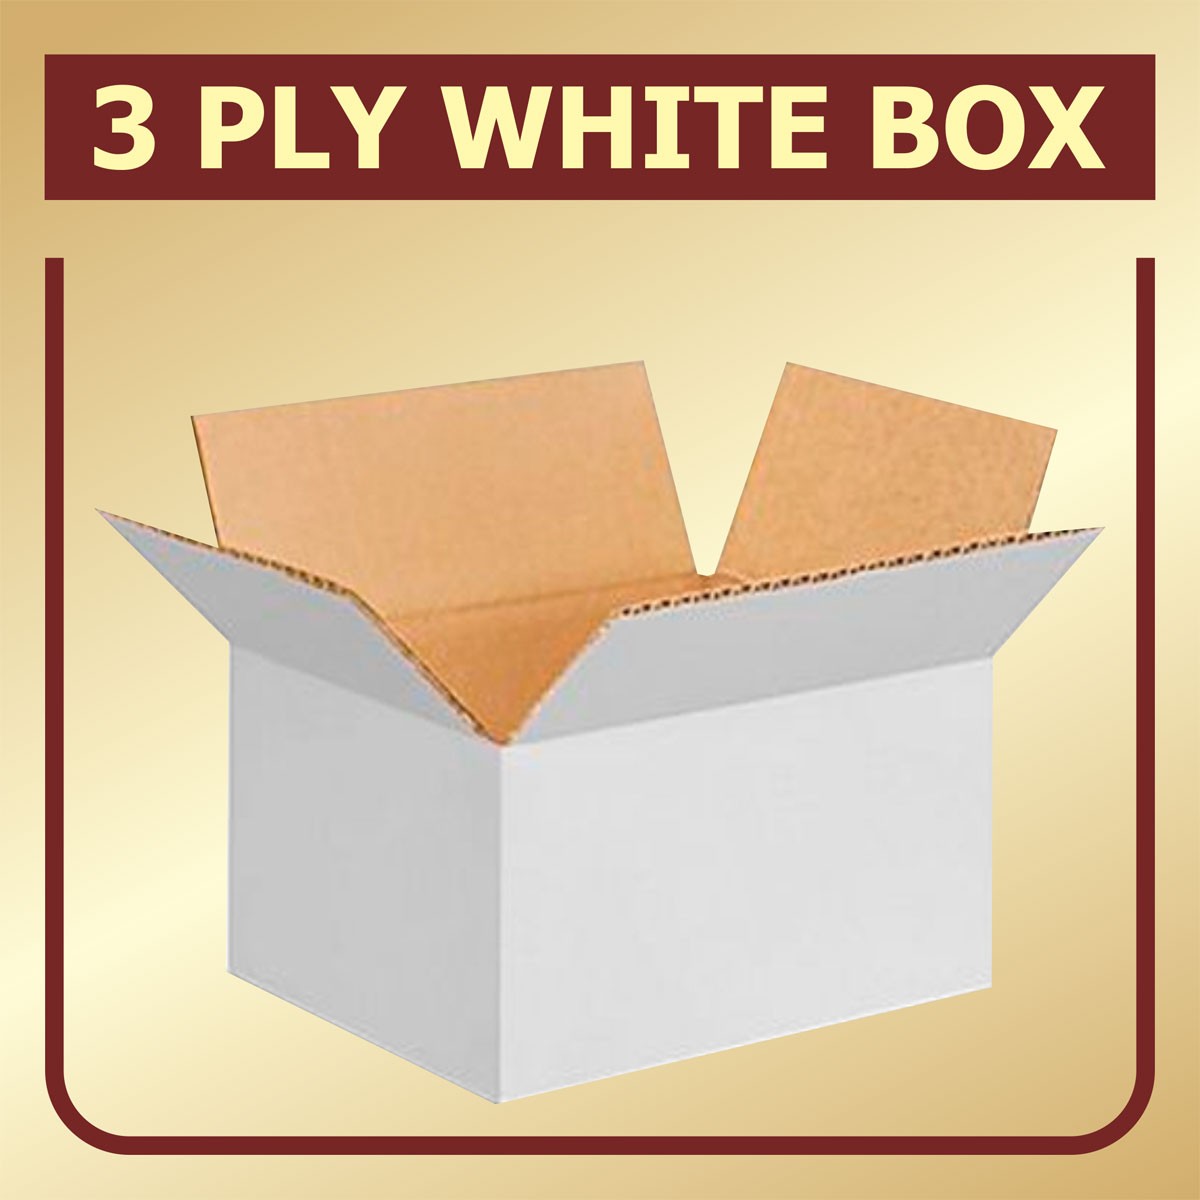 3 Ply White Box